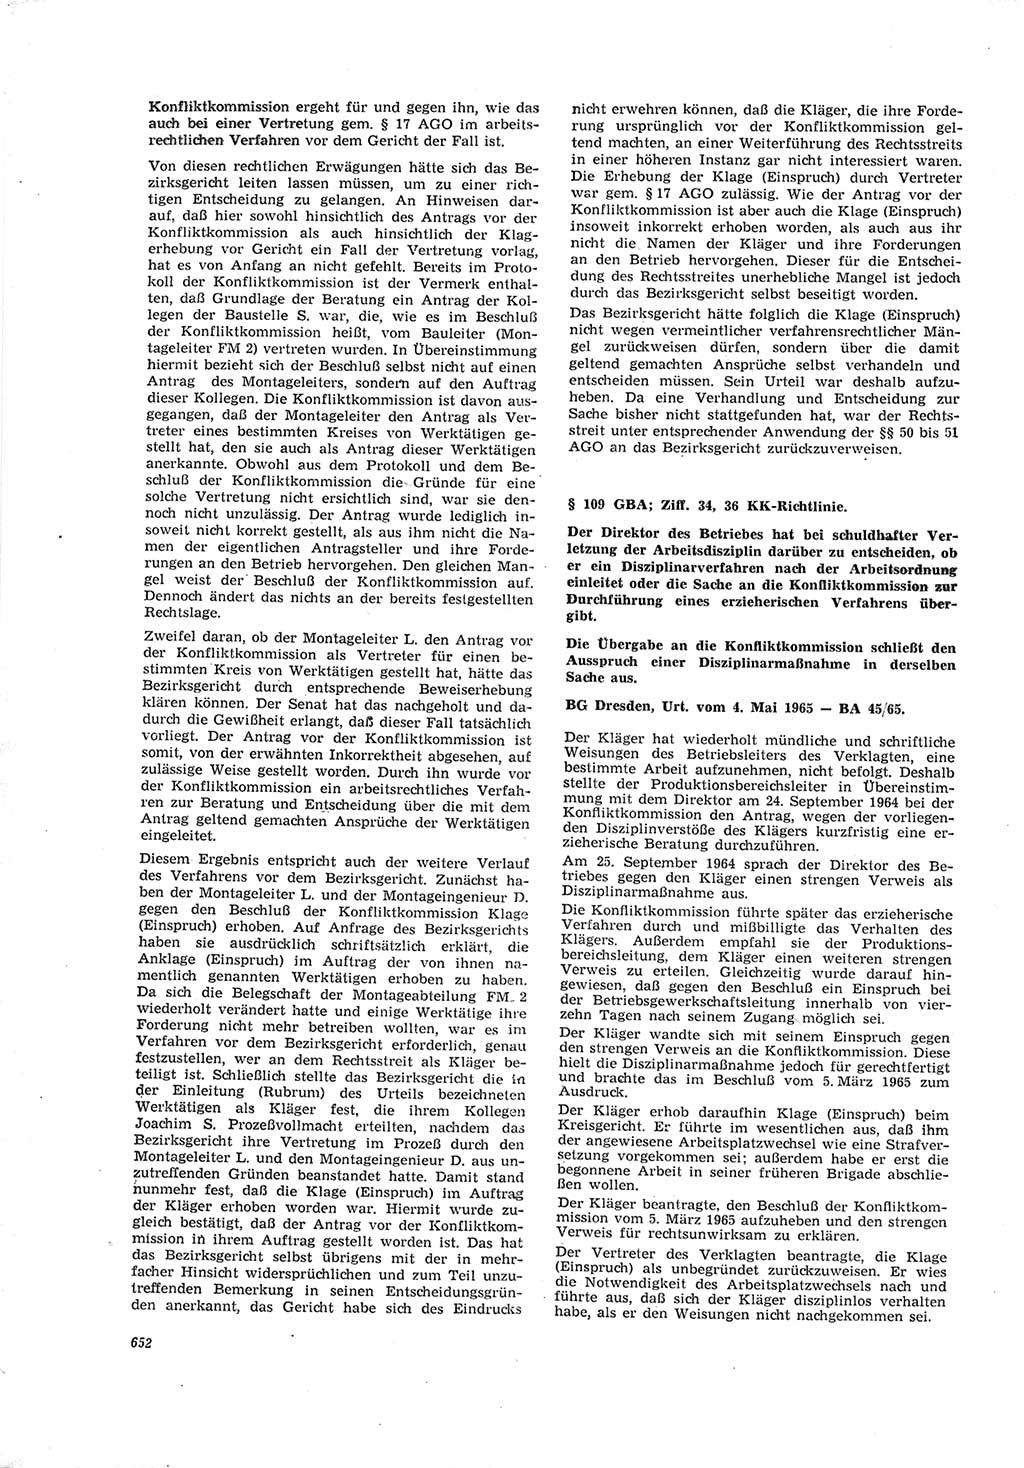 Neue Justiz (NJ), Zeitschrift für Recht und Rechtswissenschaft [Deutsche Demokratische Republik (DDR)], 19. Jahrgang 1965, Seite 652 (NJ DDR 1965, S. 652)